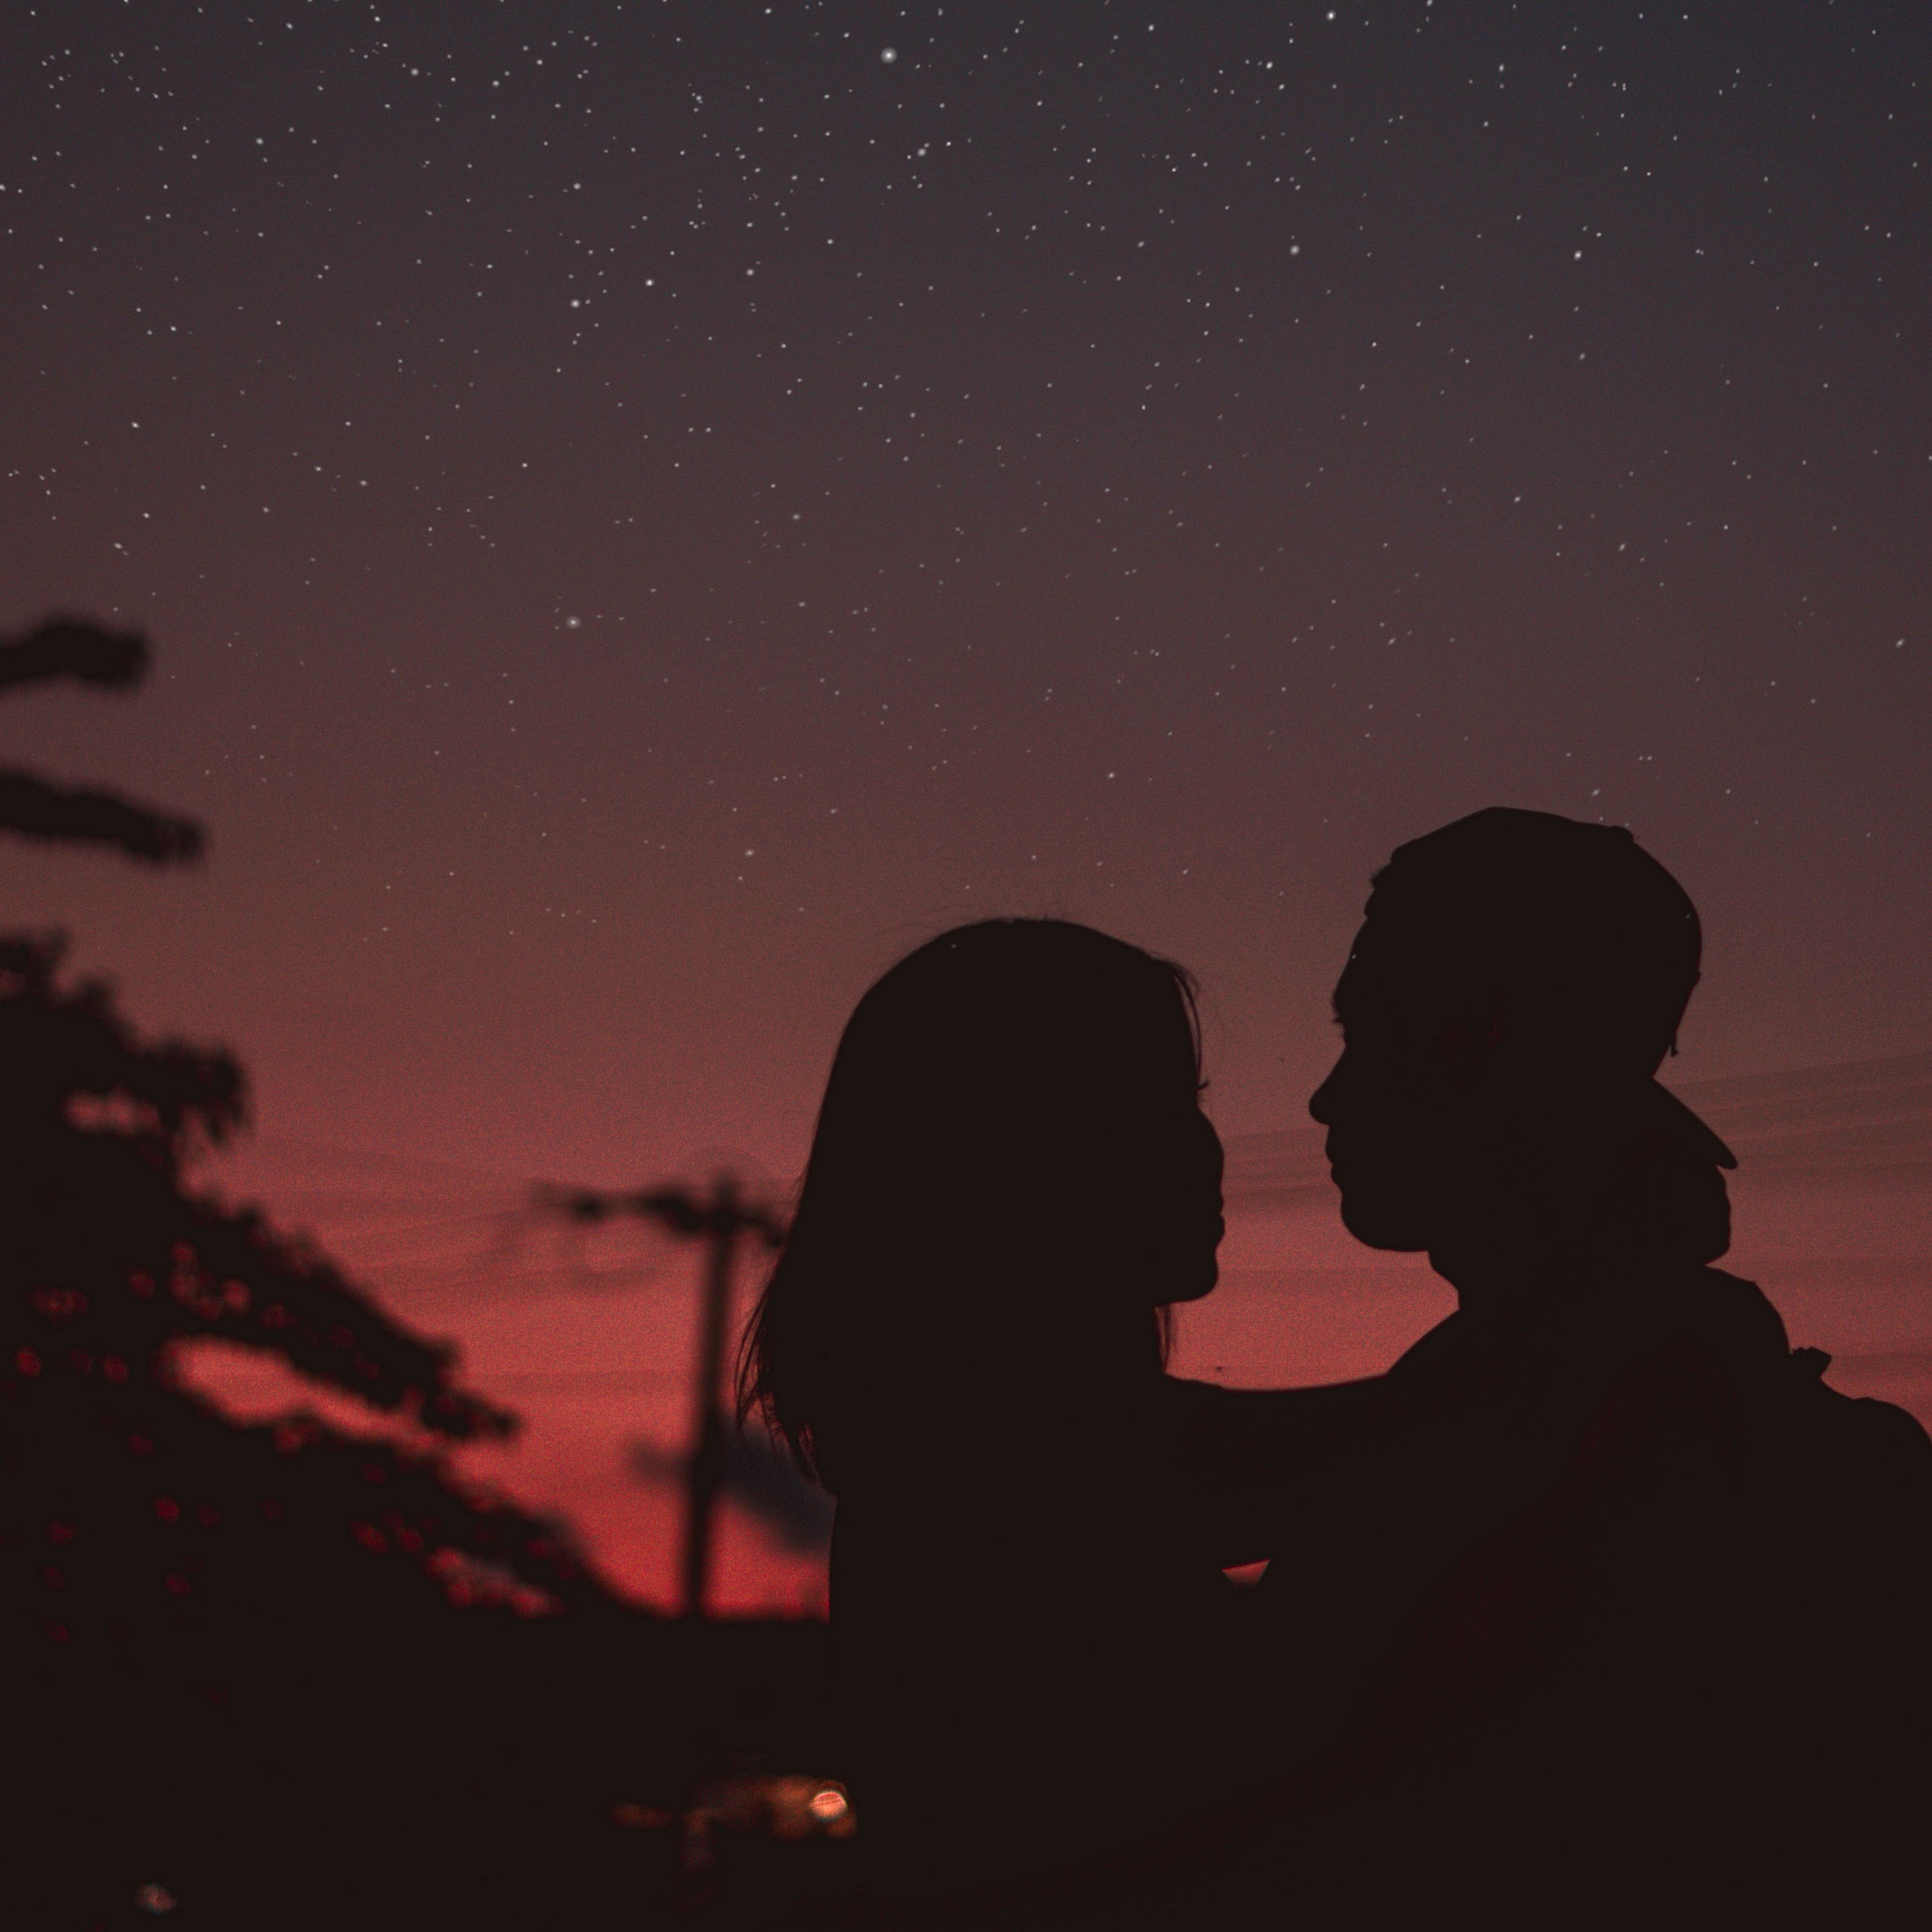 couple. night. starry sky. silhouettes. hugs. 